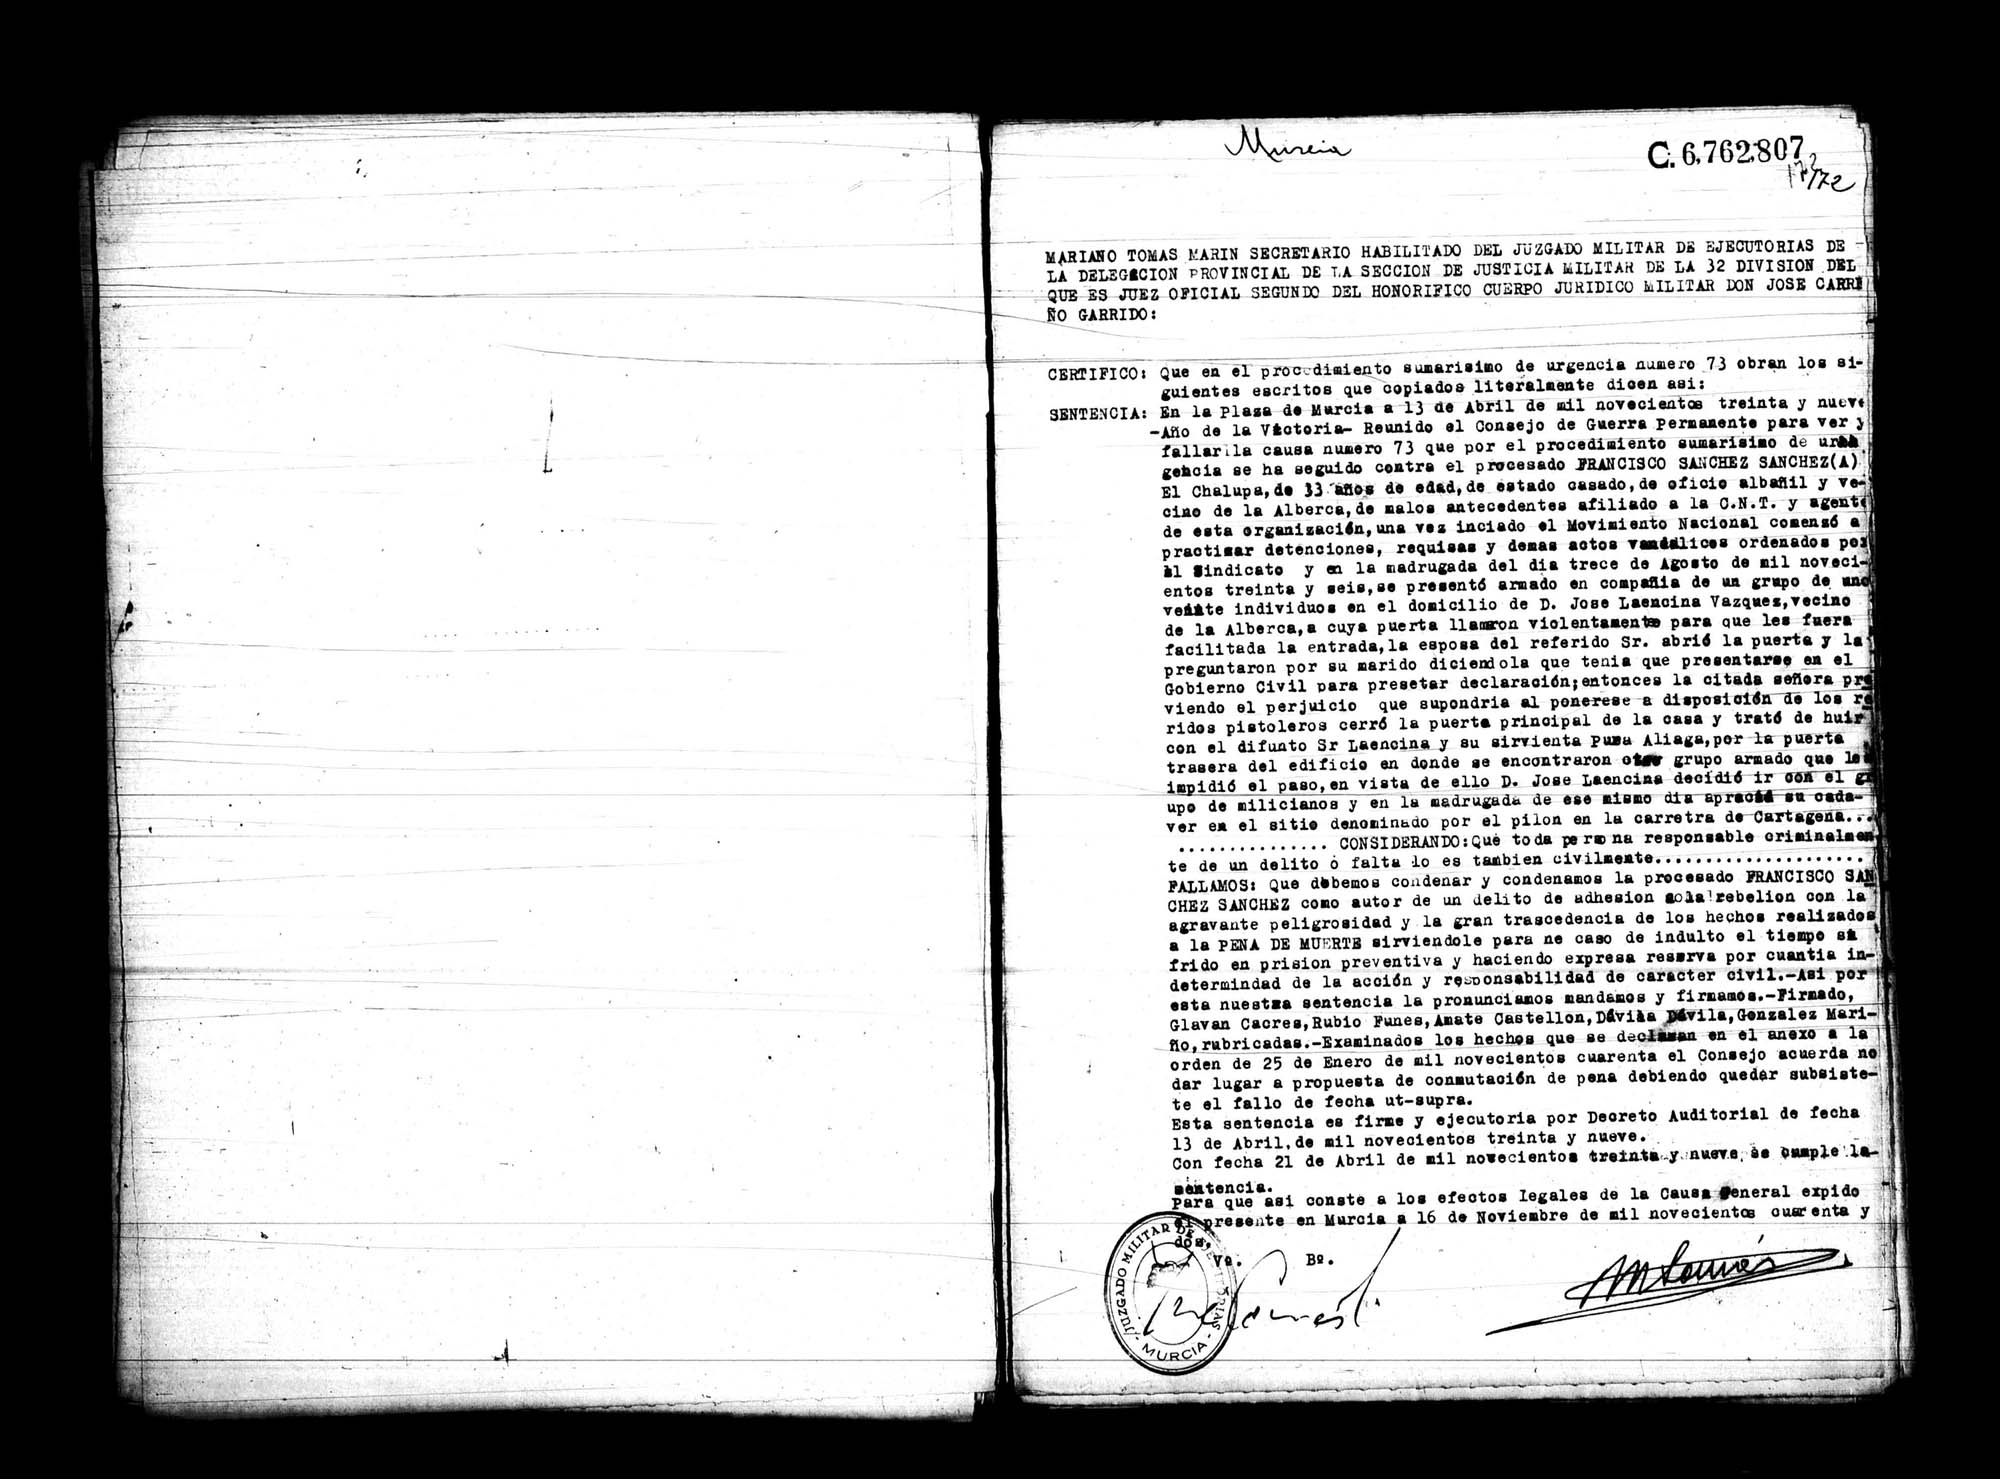 Certificado de la sentencia pronunciada contra Francisco Sánchez Sánchez, causa 73, el 13 de abril de 1939 en Murcia.